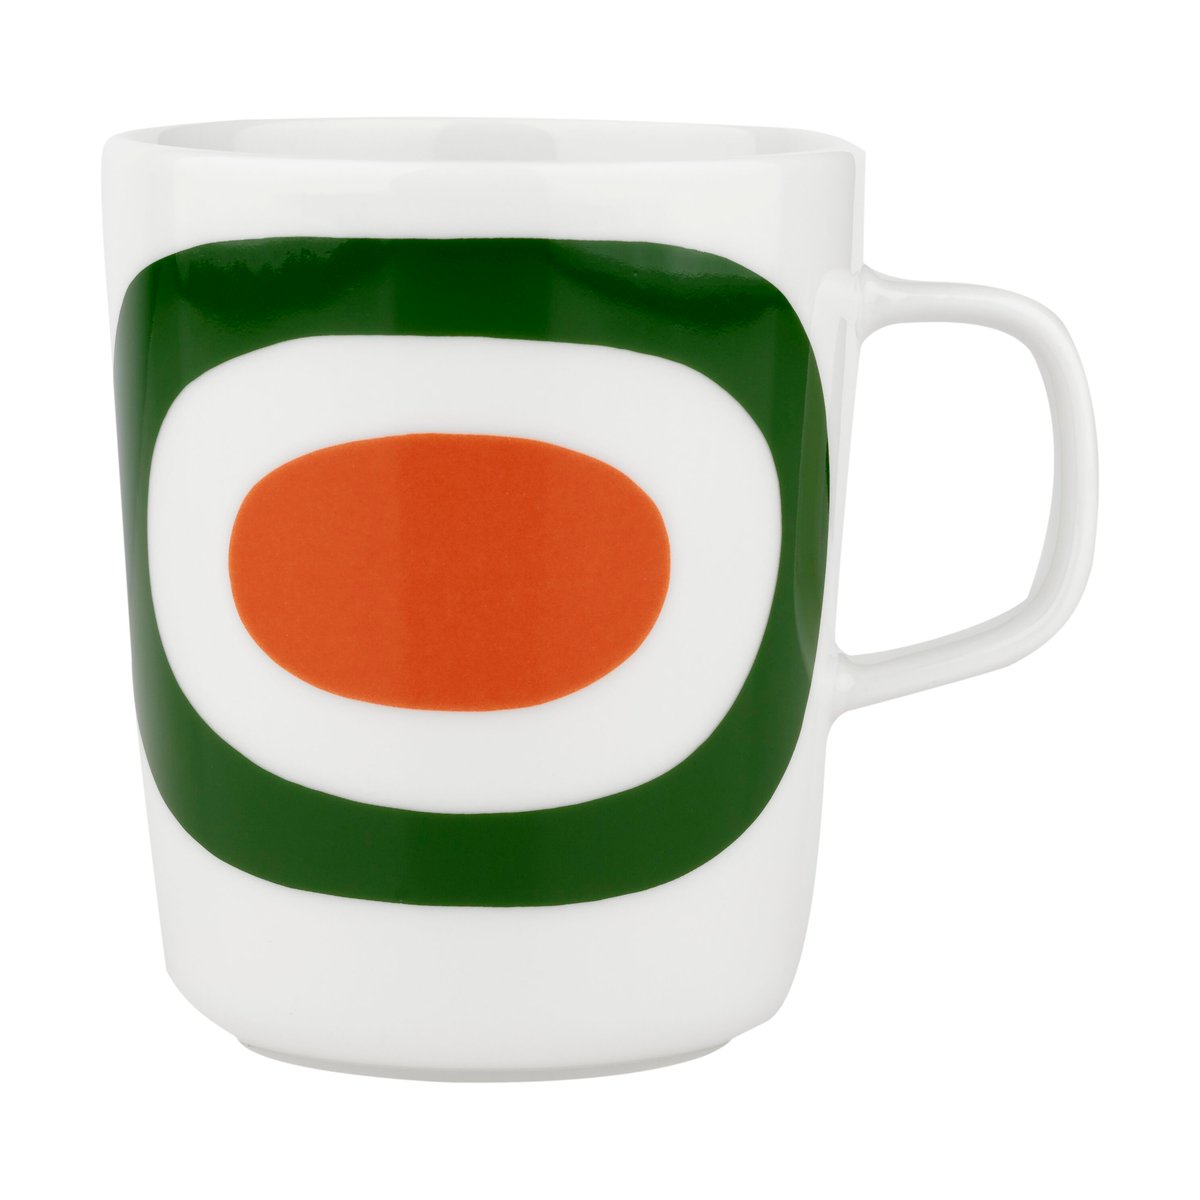 marimekko mug melooni 25 cl white-green-orange